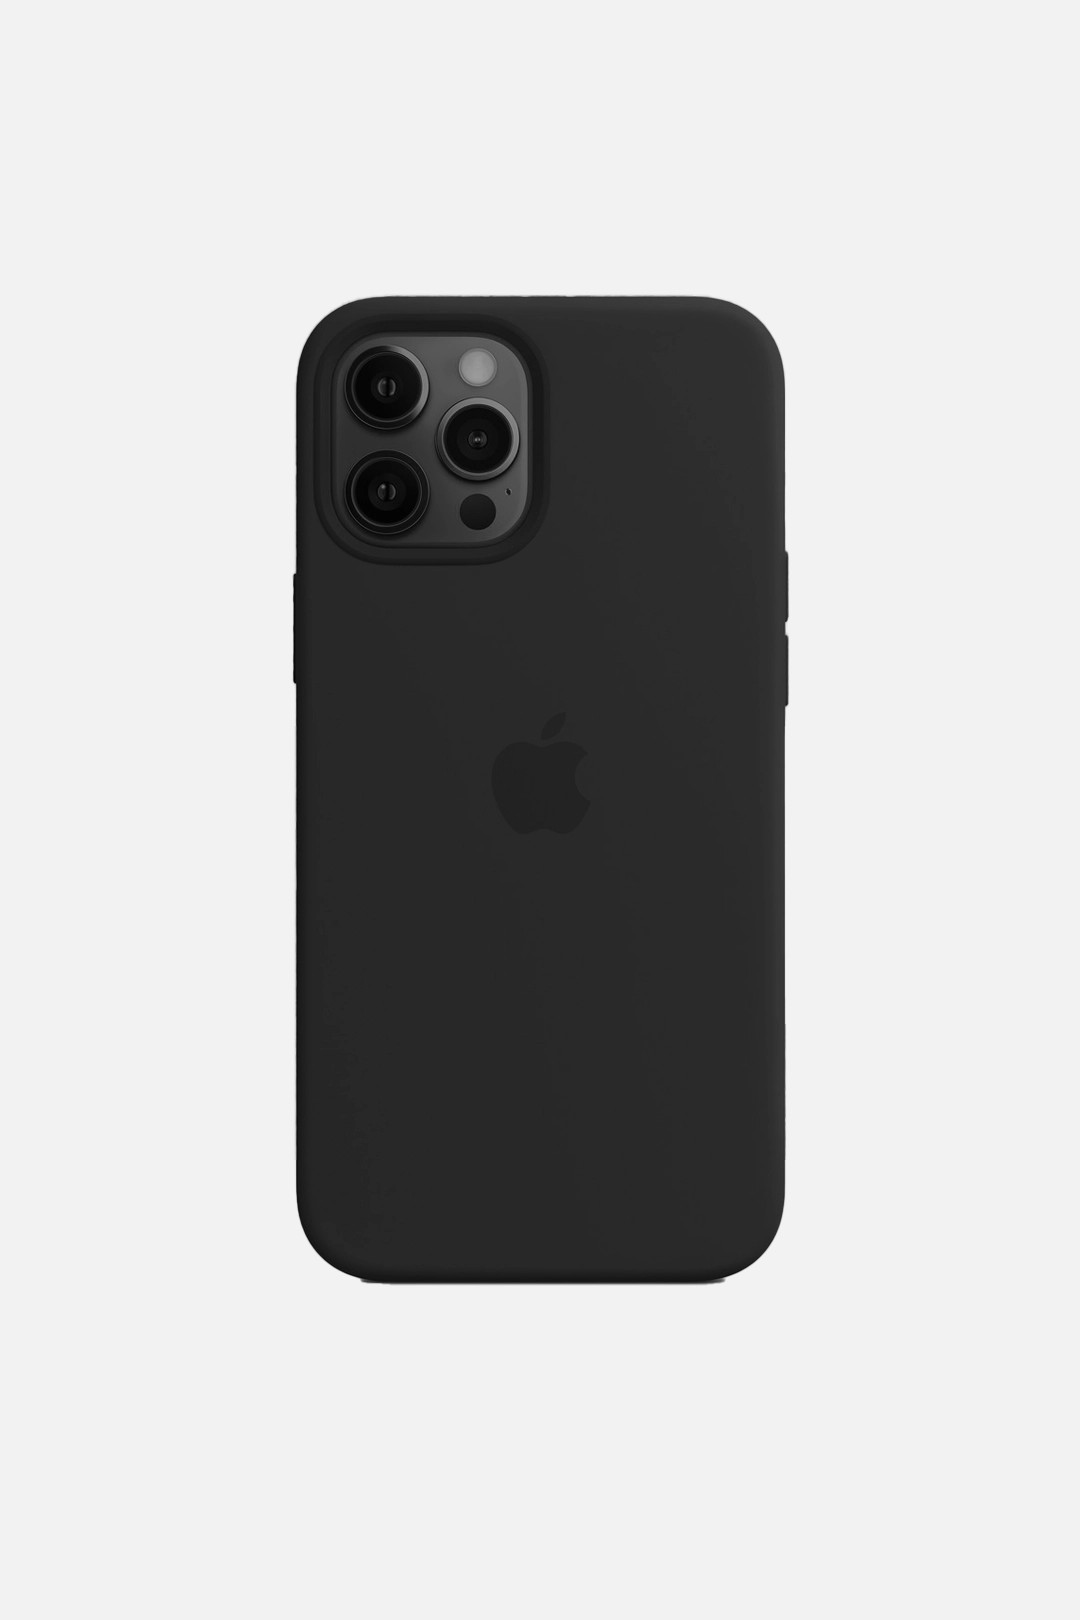 Apple iPhone Silikon Kılıf - Tüm Modeller - Siyah